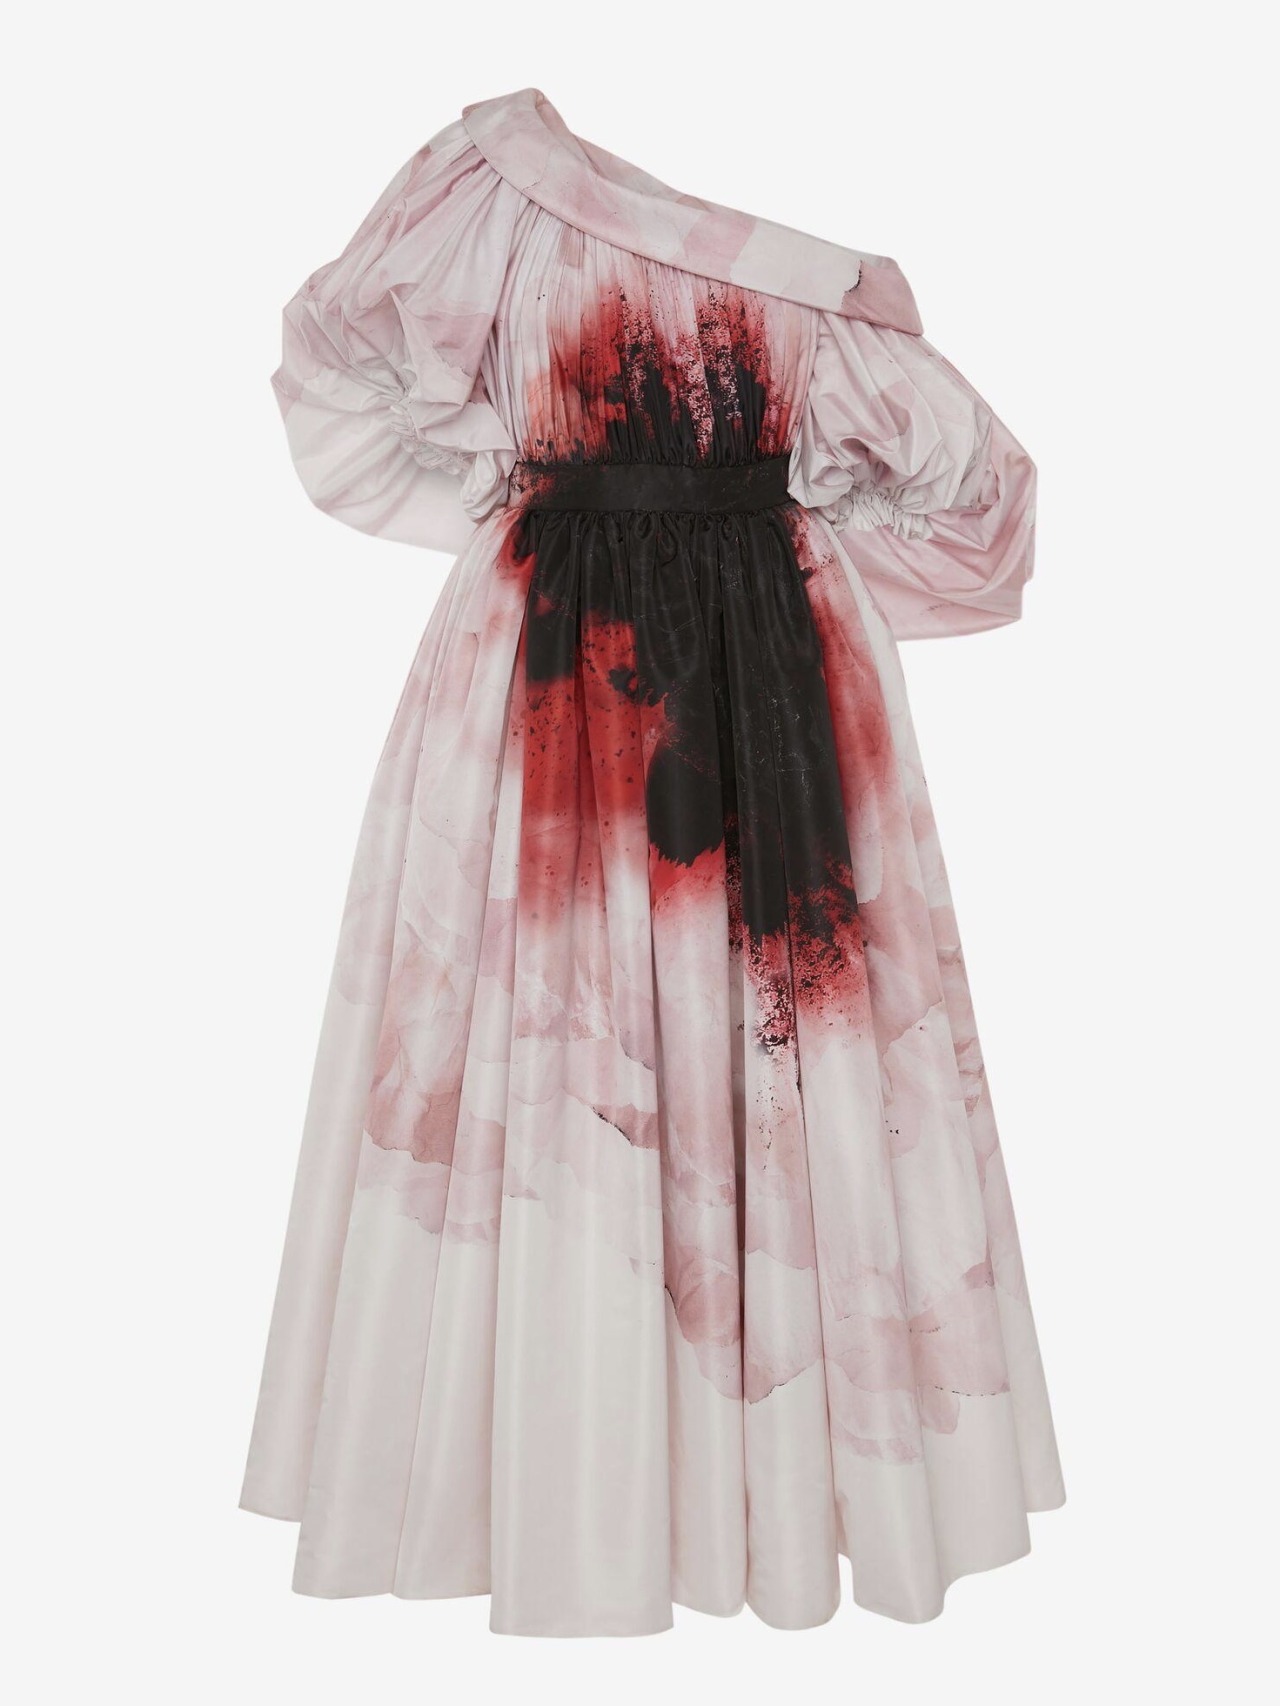 zegalba:Alexander McQueen: Blood Stained Anemone Dress Autumn/Winter 2021